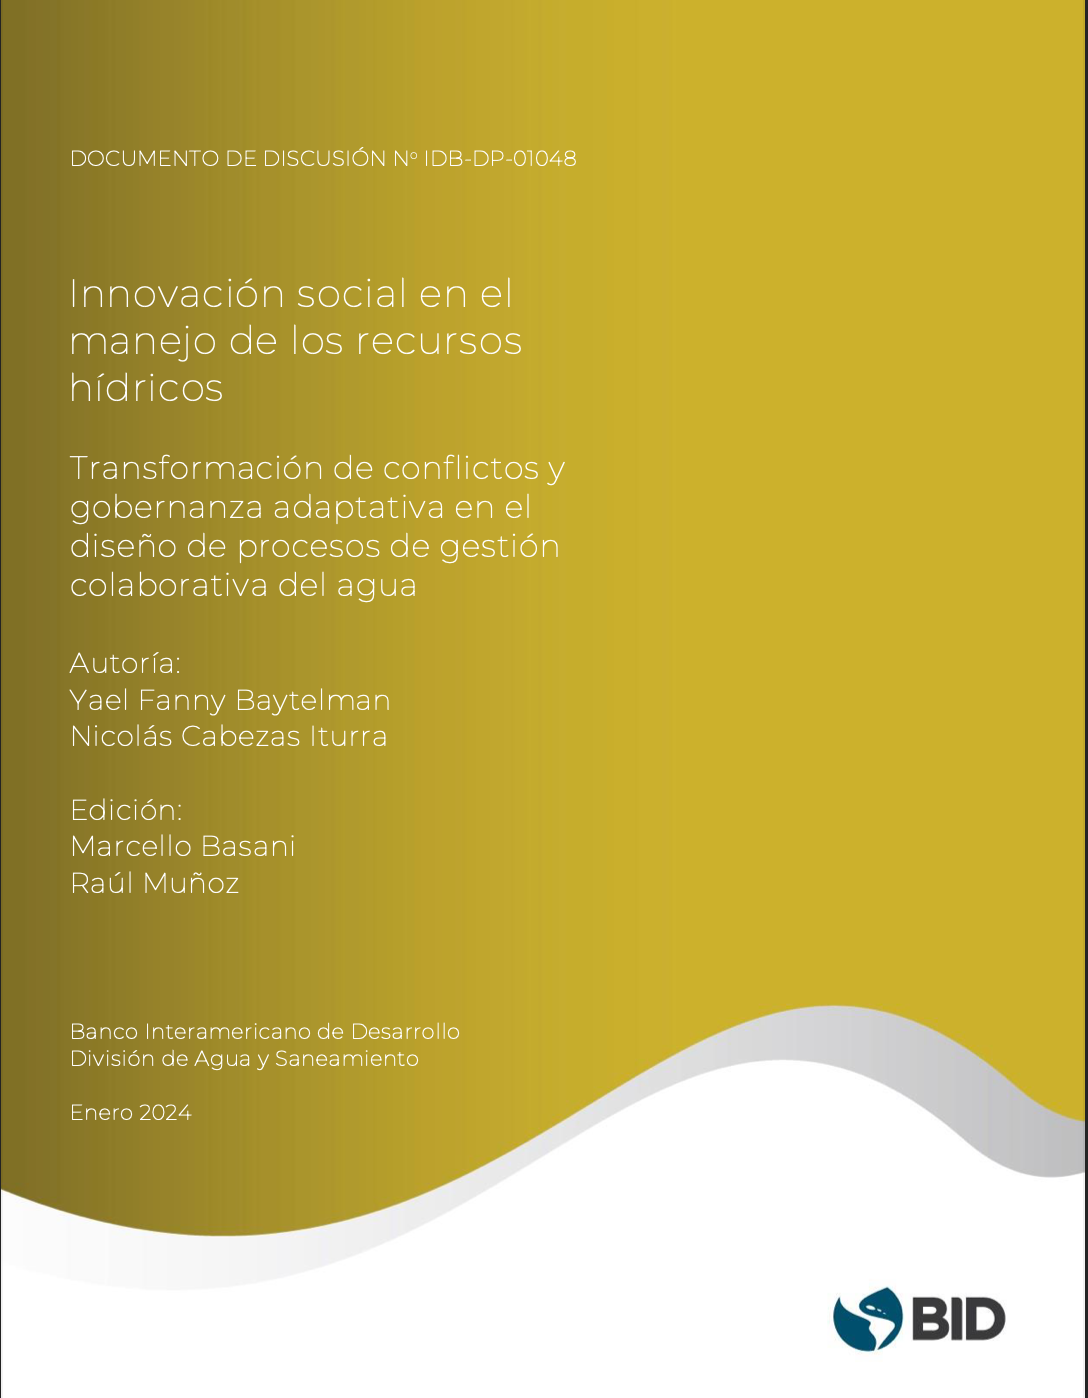 Innovación social en el manejo de los recursos hídricos: transformación de conflictos y gobernanza adaptativa en el diseño de procesos de gestión colaborativa del agua (BID)